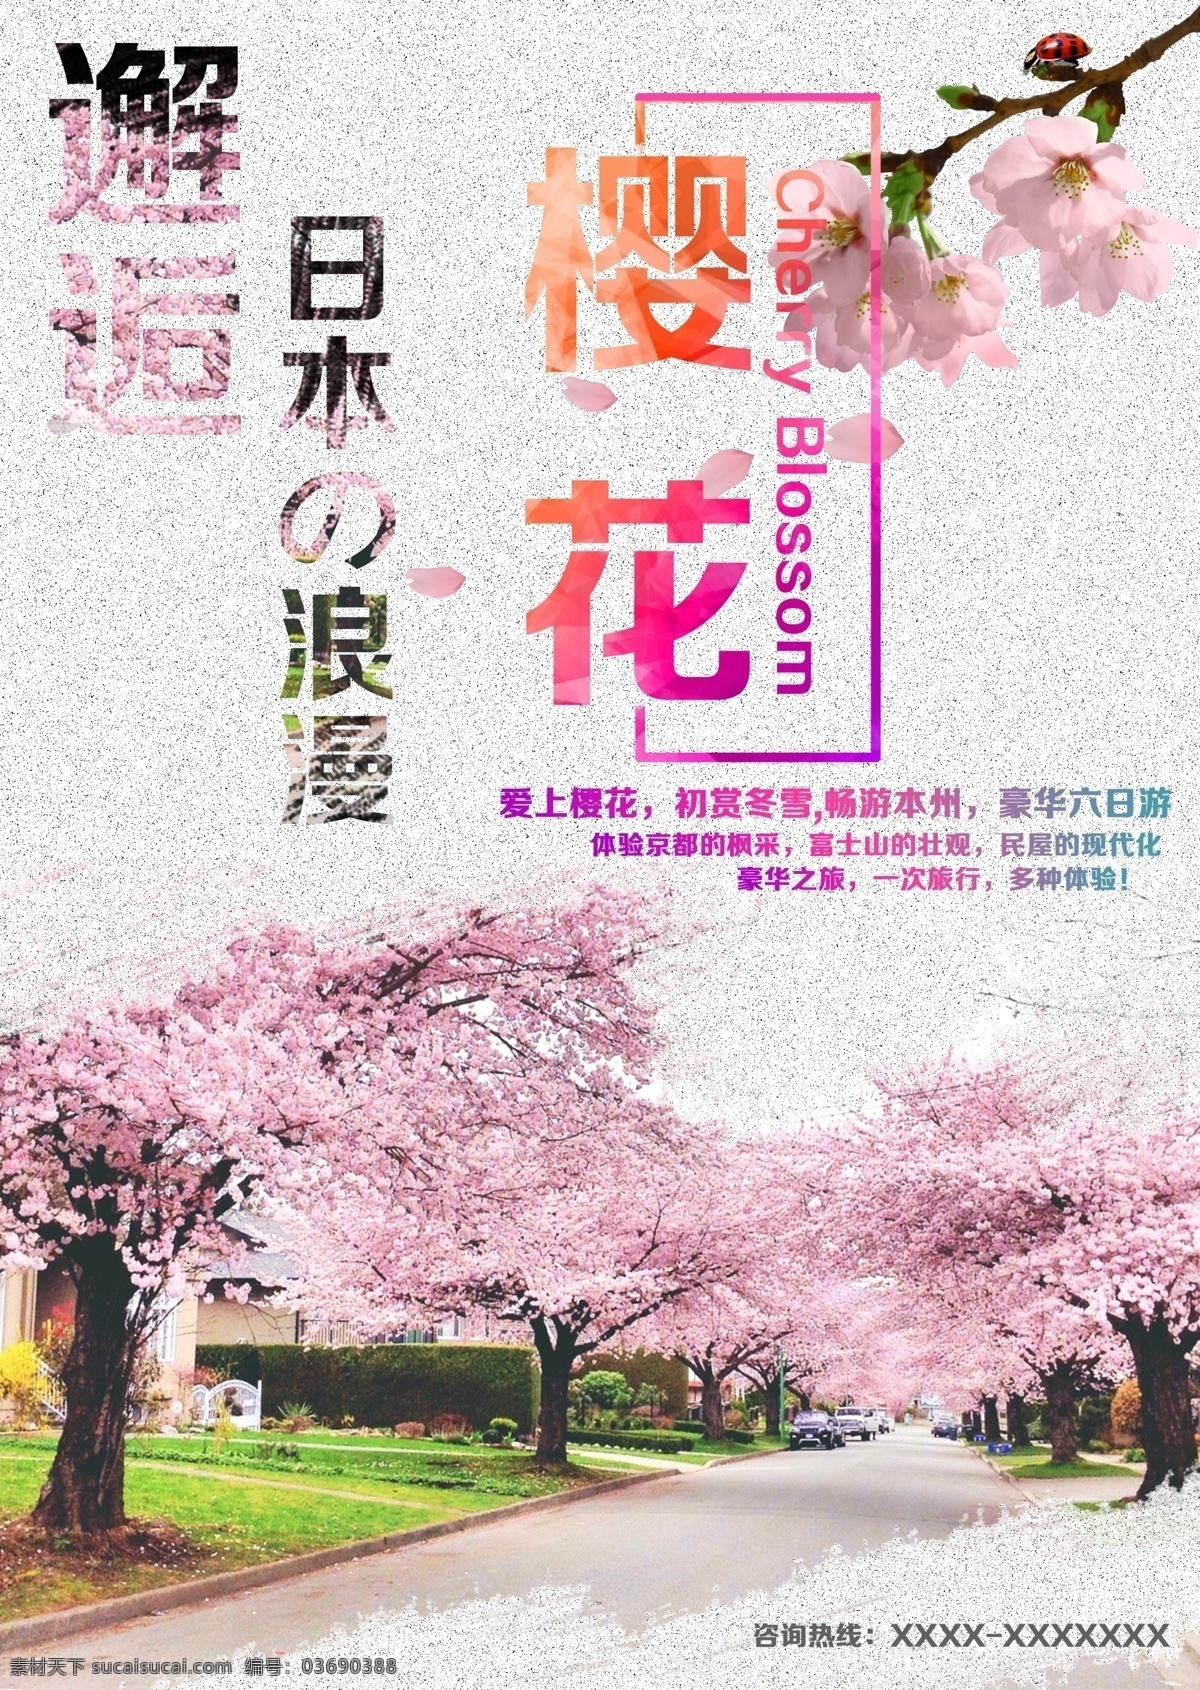 日本 樱花 宣传海报 樱花宣传 海报 旅游 浪漫 邂逅 风景 自然 人文